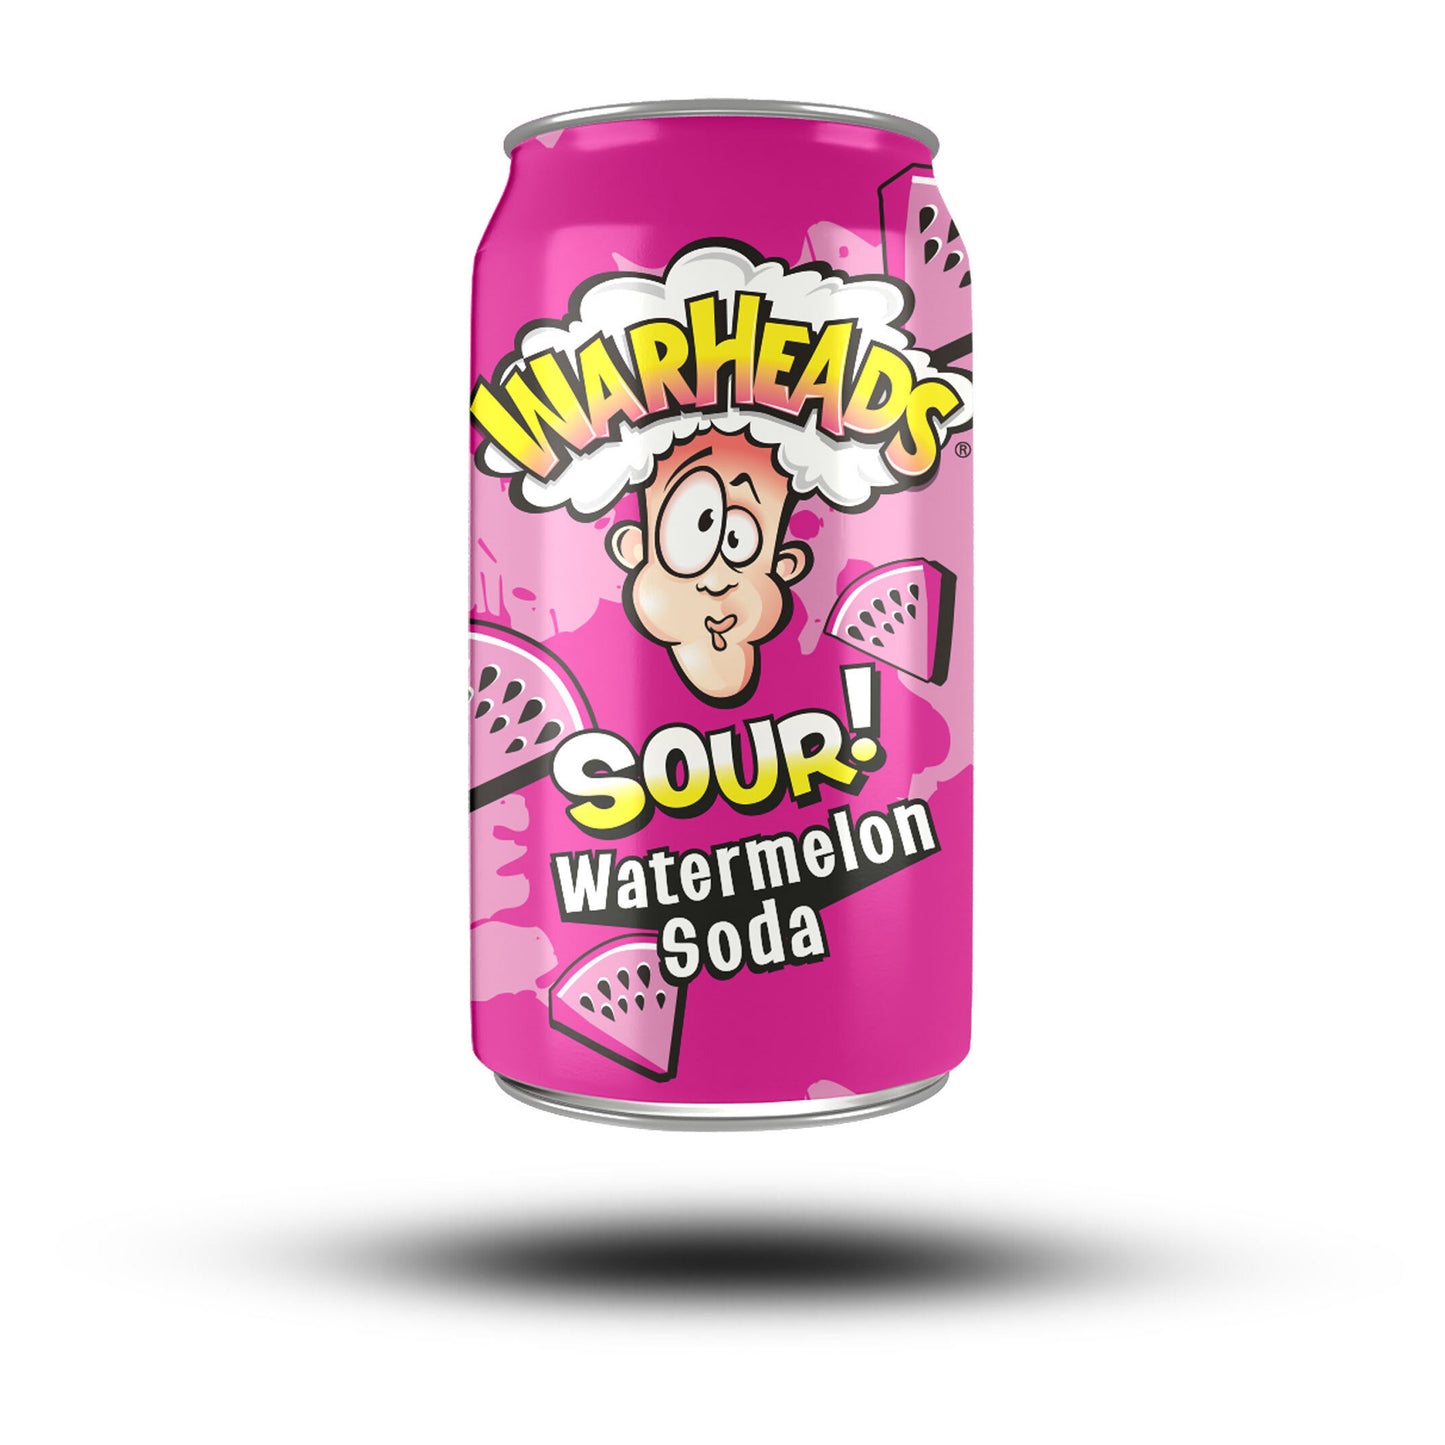 Warheads Sour Watermelon Soda | 24 x 355ml